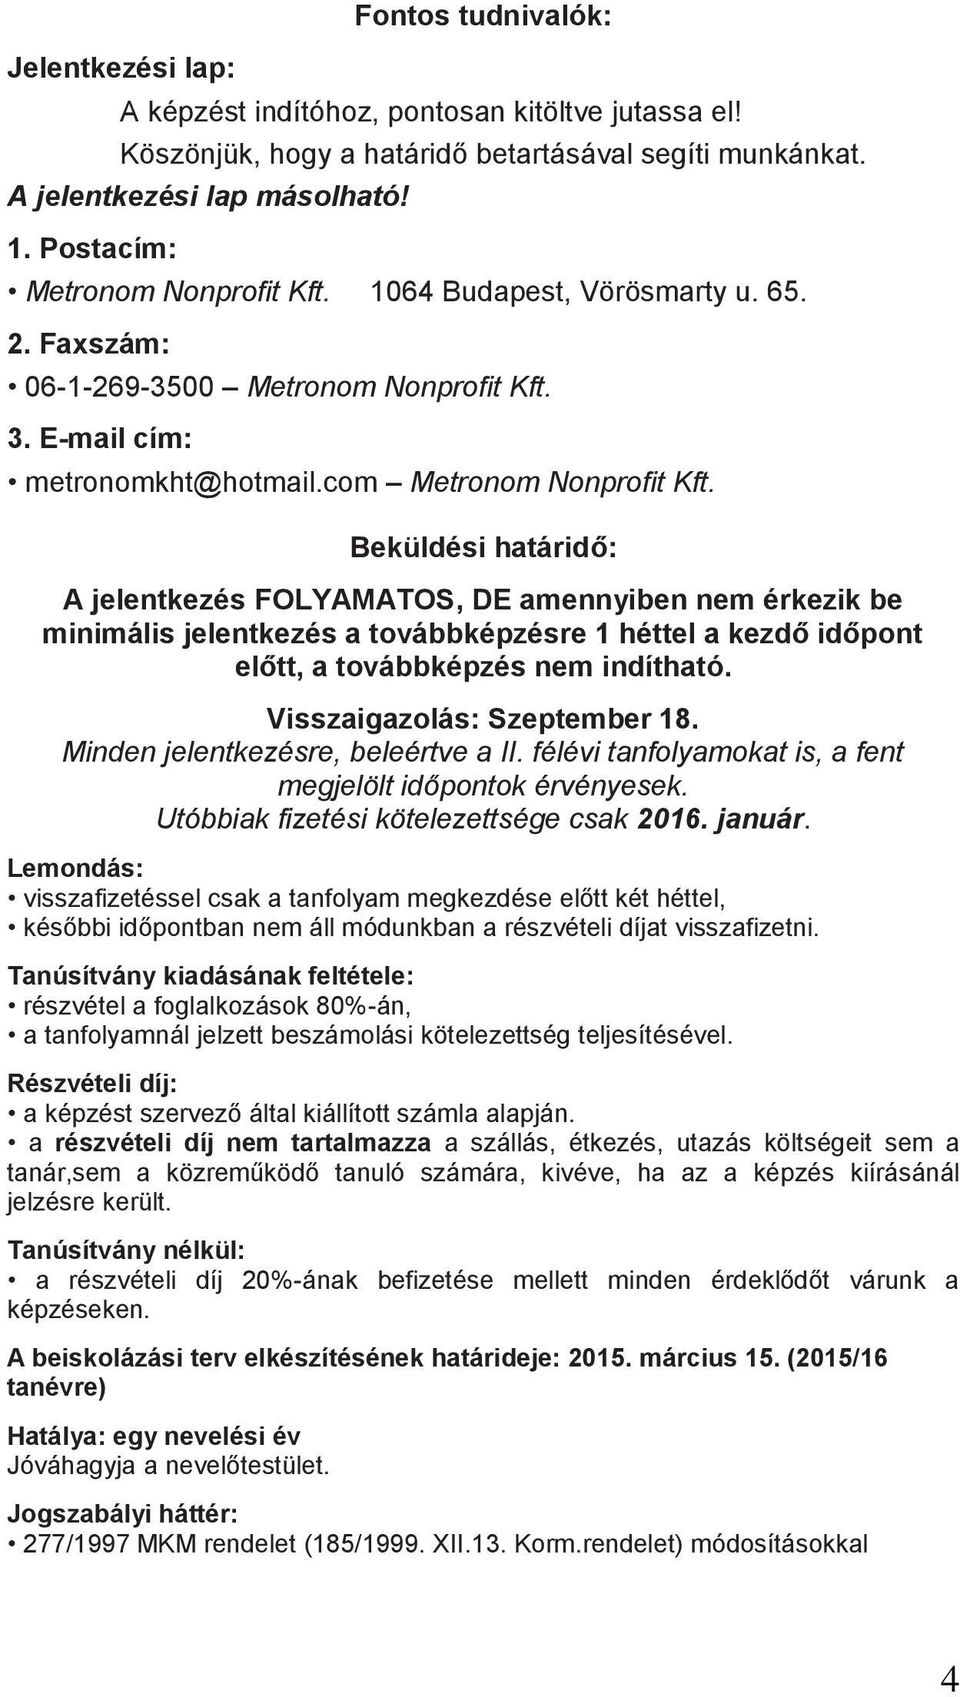 METRONOM NONPROFIT KFT. - PDF Ingyenes letöltés